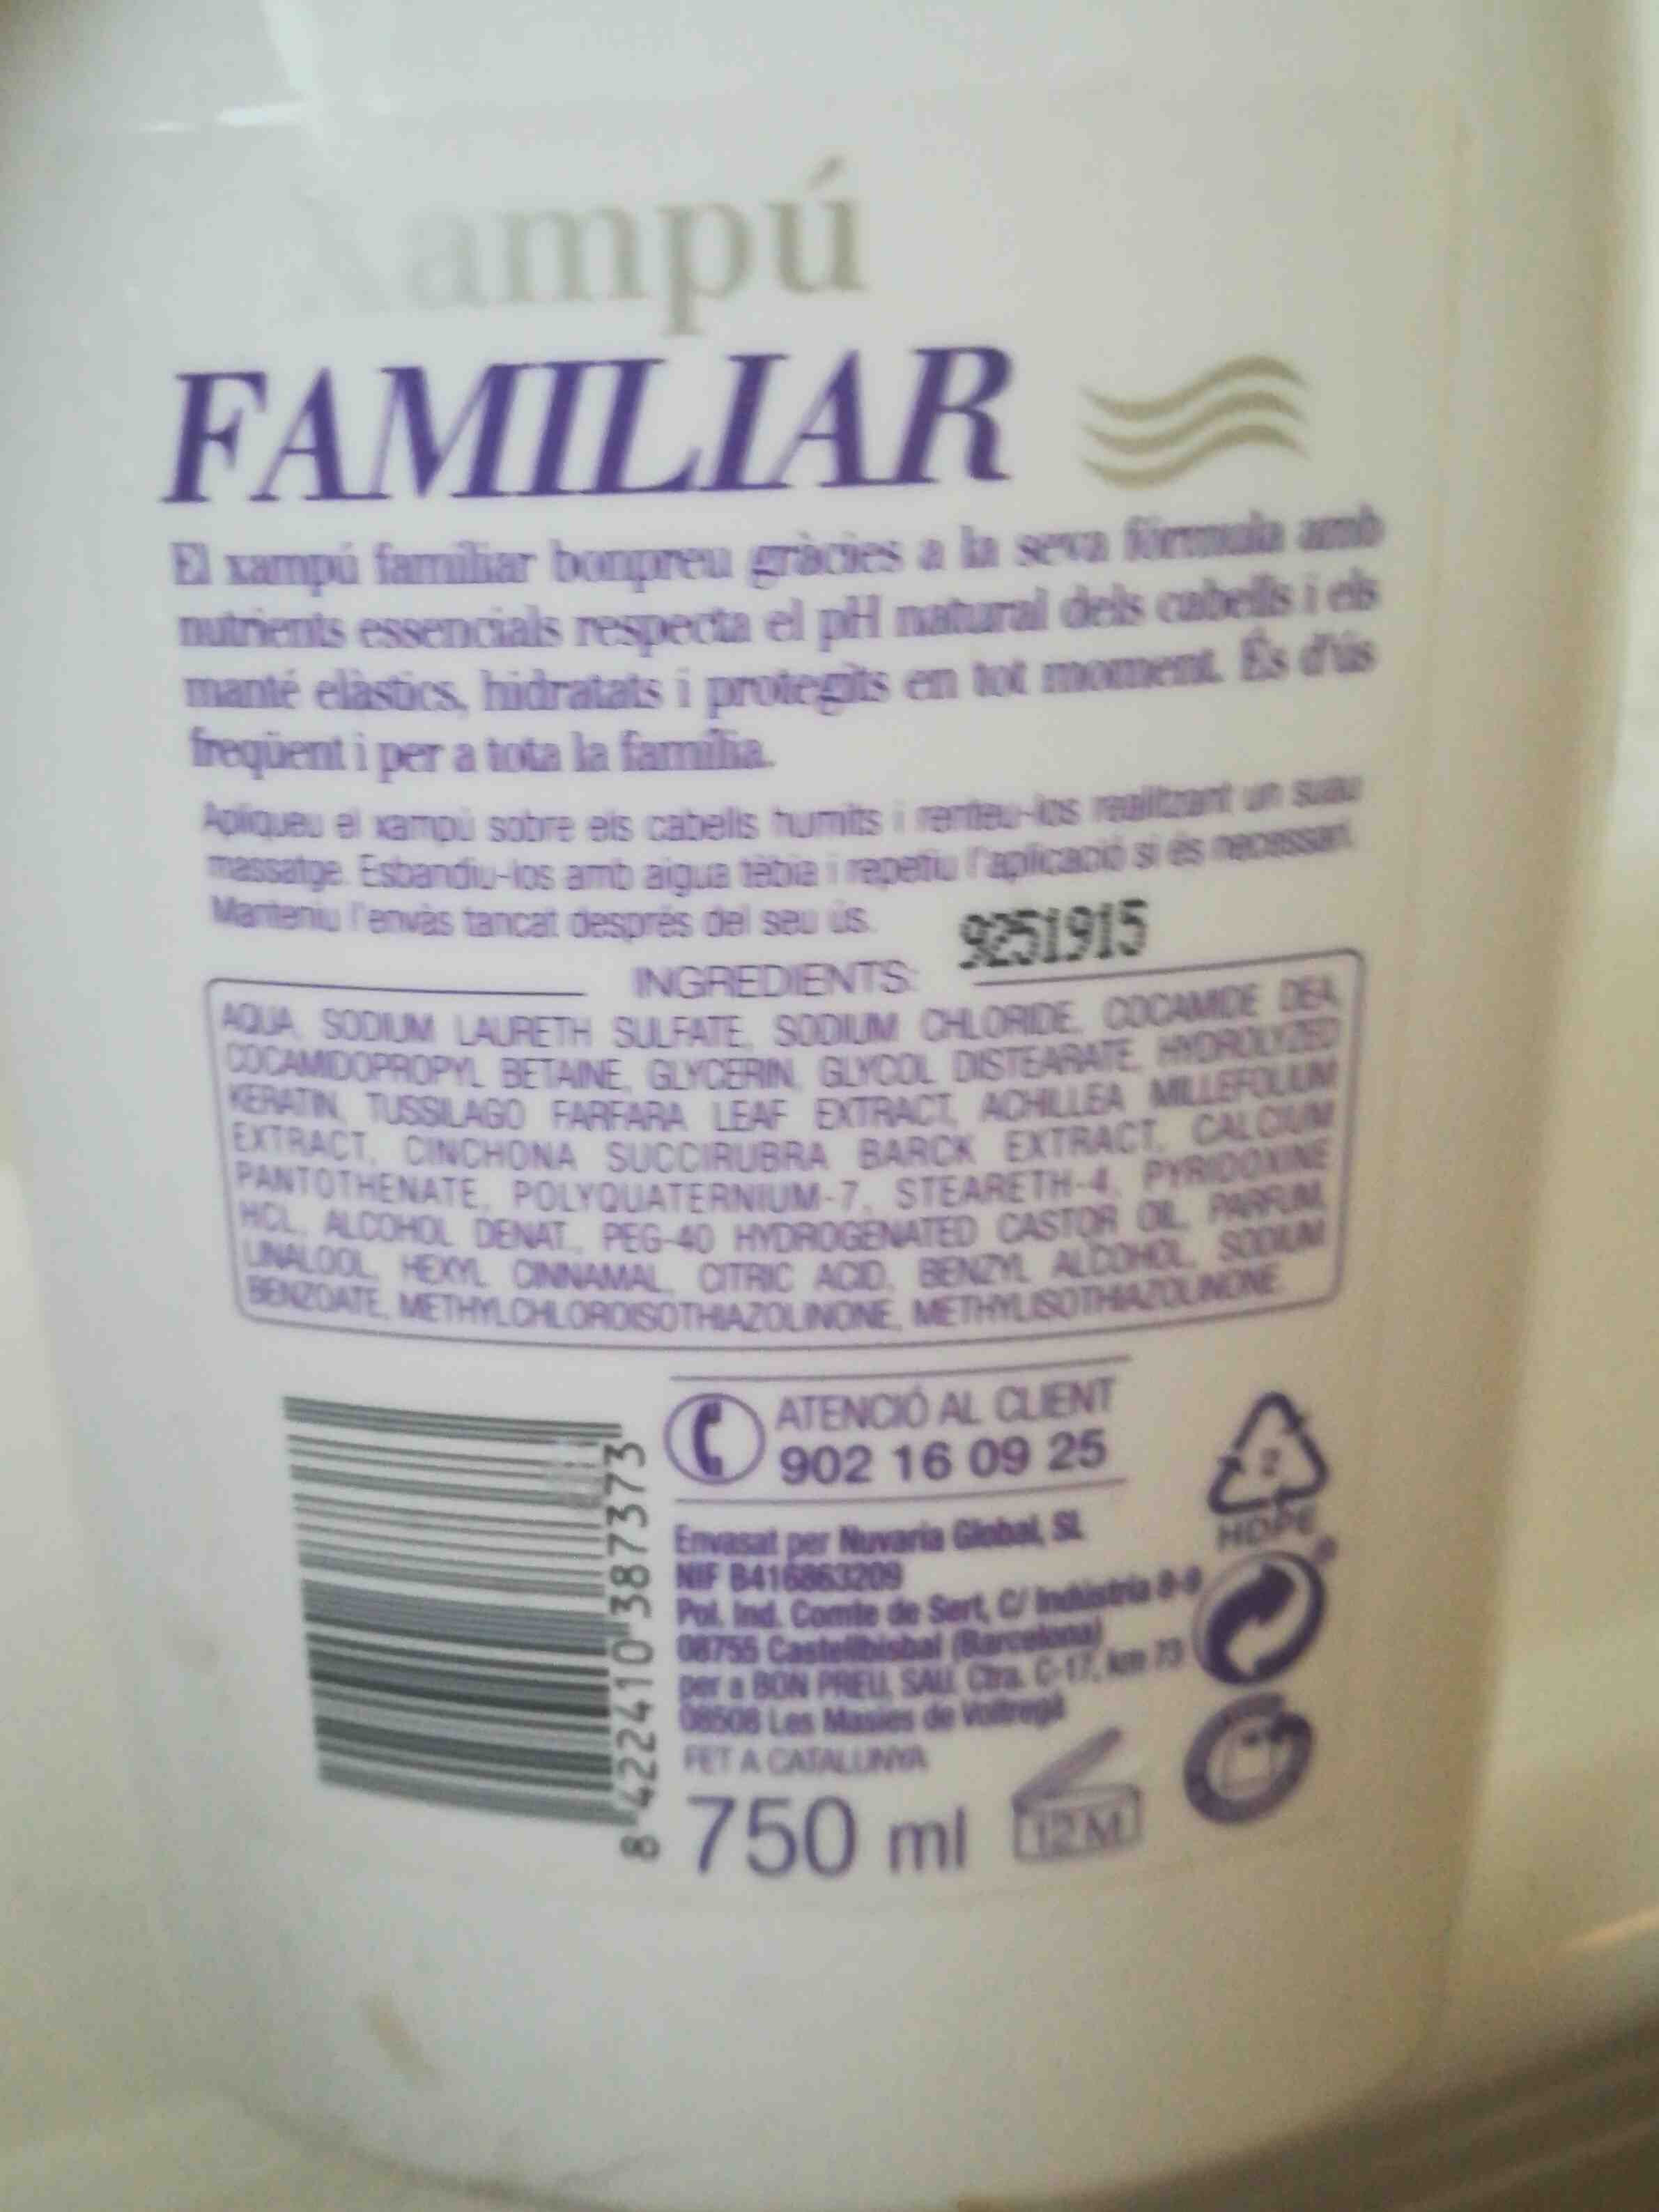 Xampu familiar bon preu - Ингредиенты - en